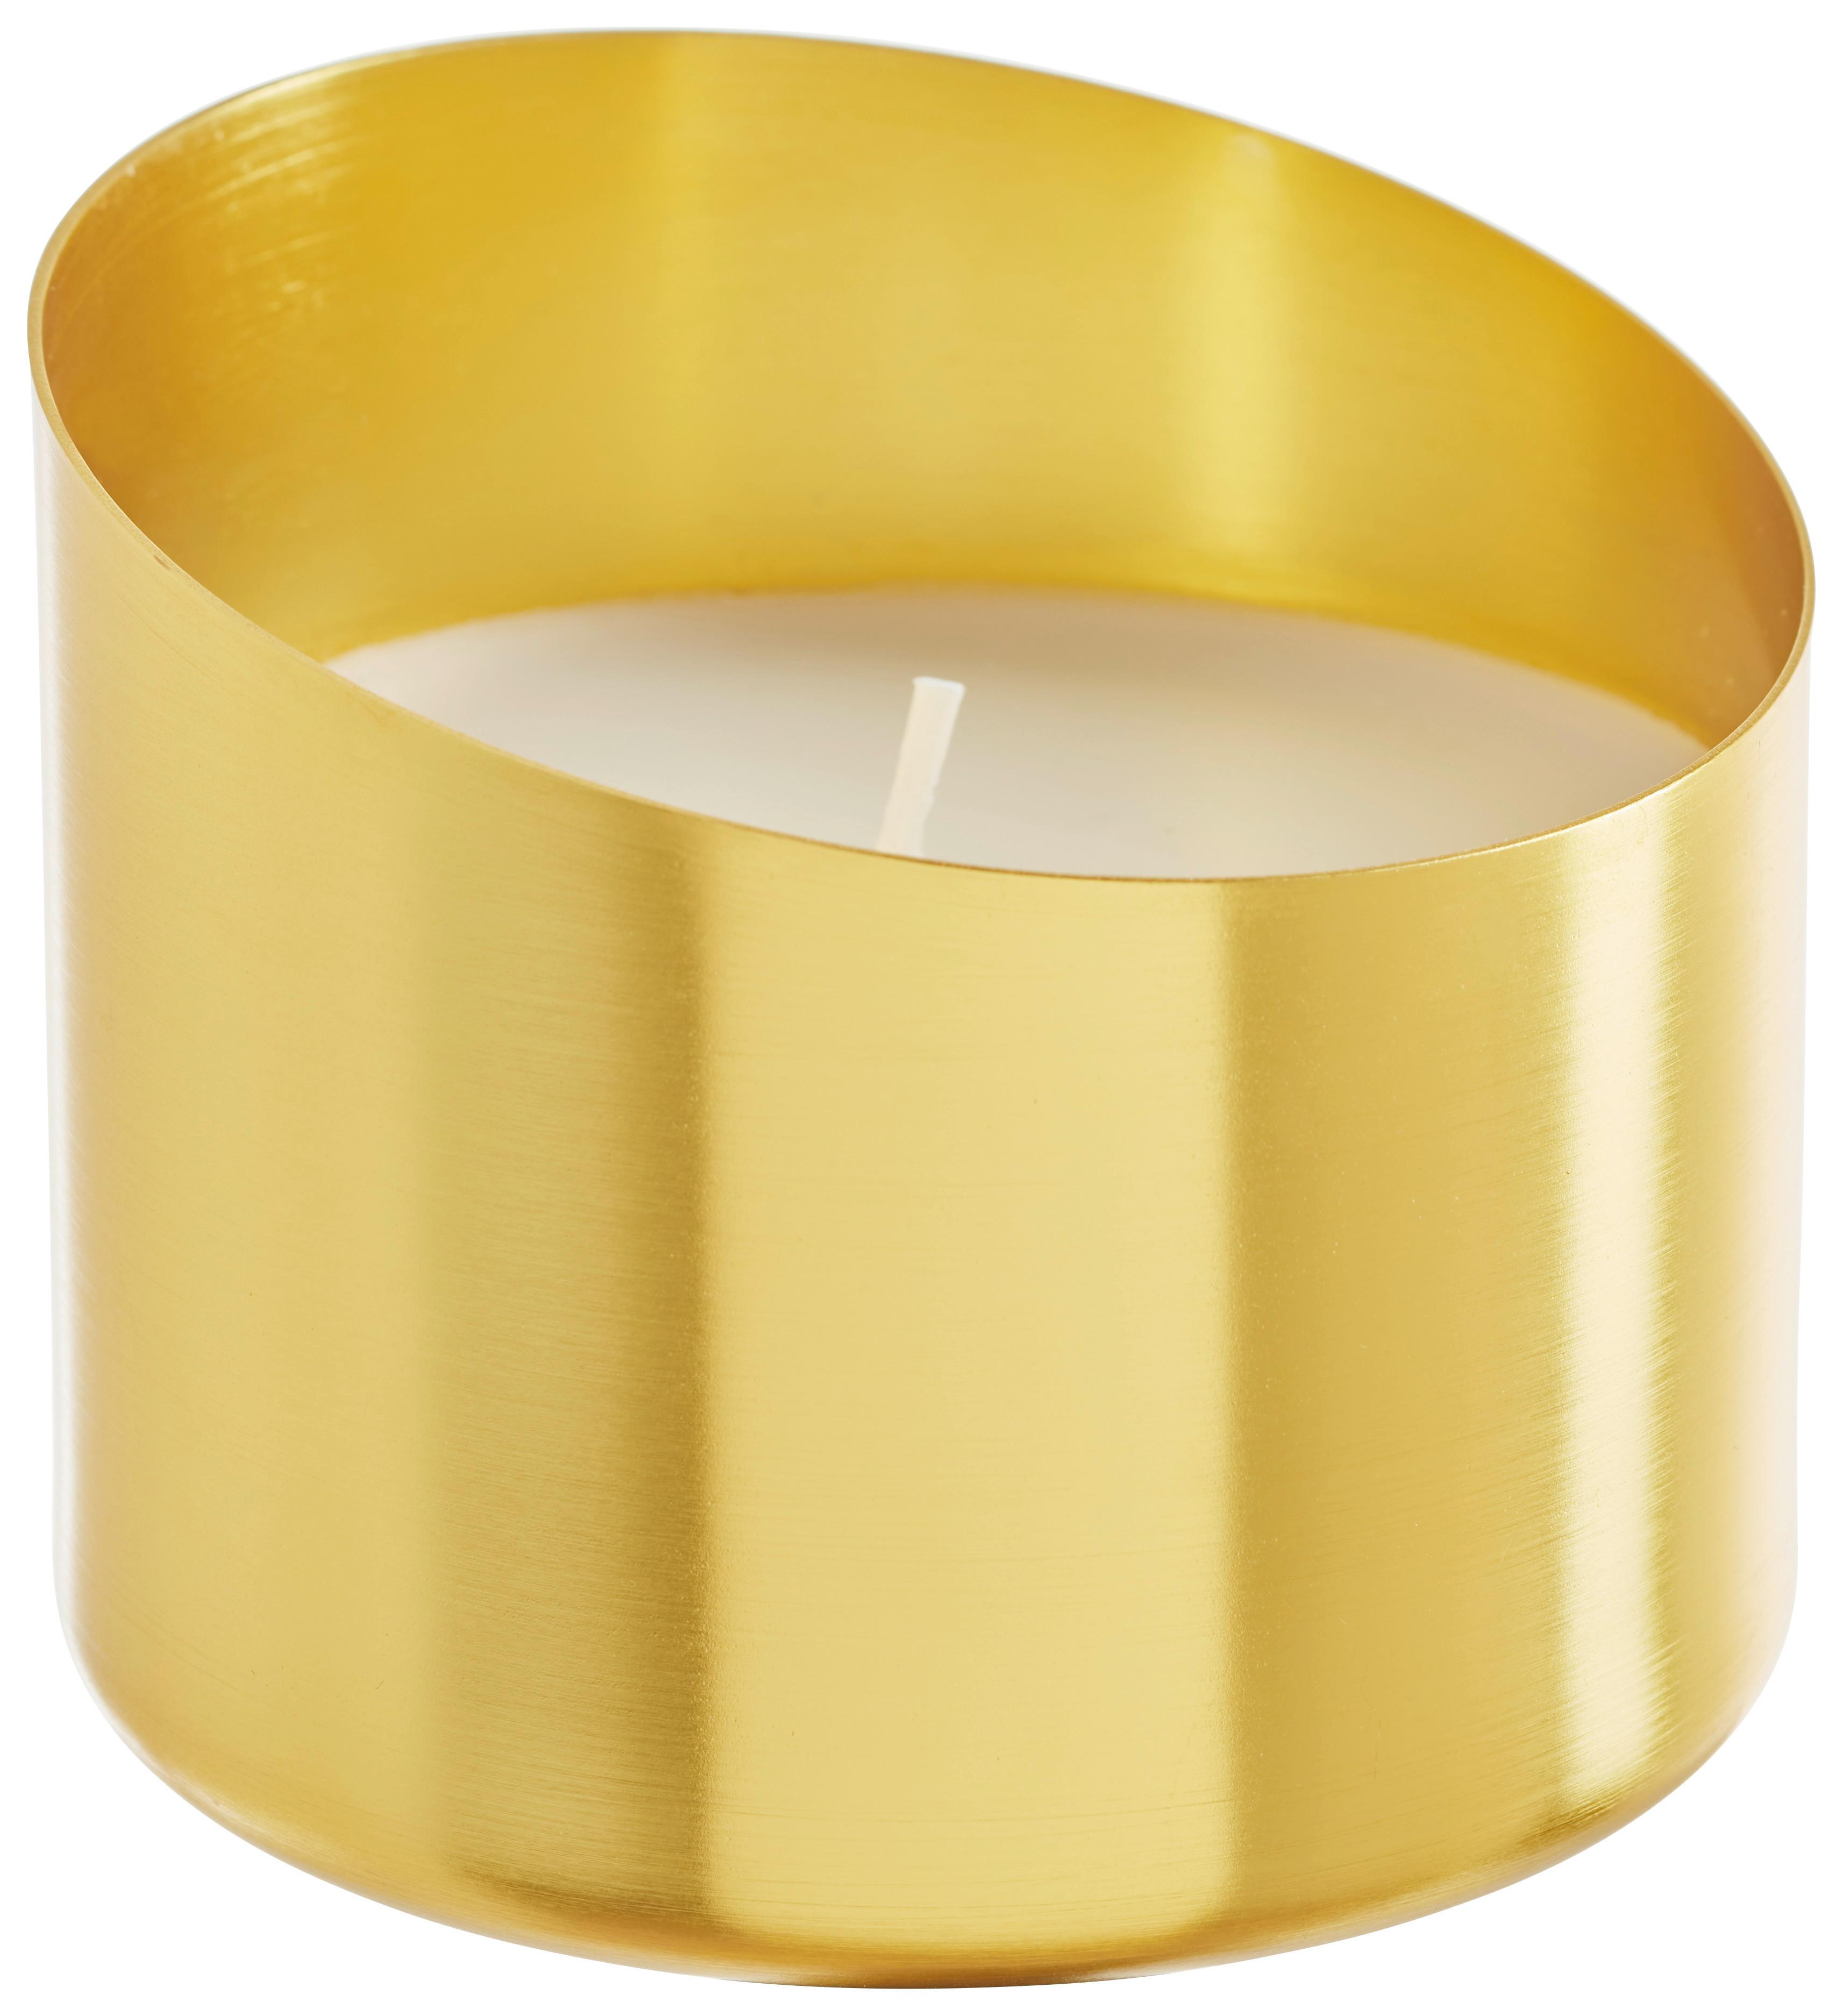 Svíčka V Nádobce Mavie, 35 Hod. - bílá/barvy zlata, Romantický / Rustikální, kov (8,9/7,6cm) - Modern Living